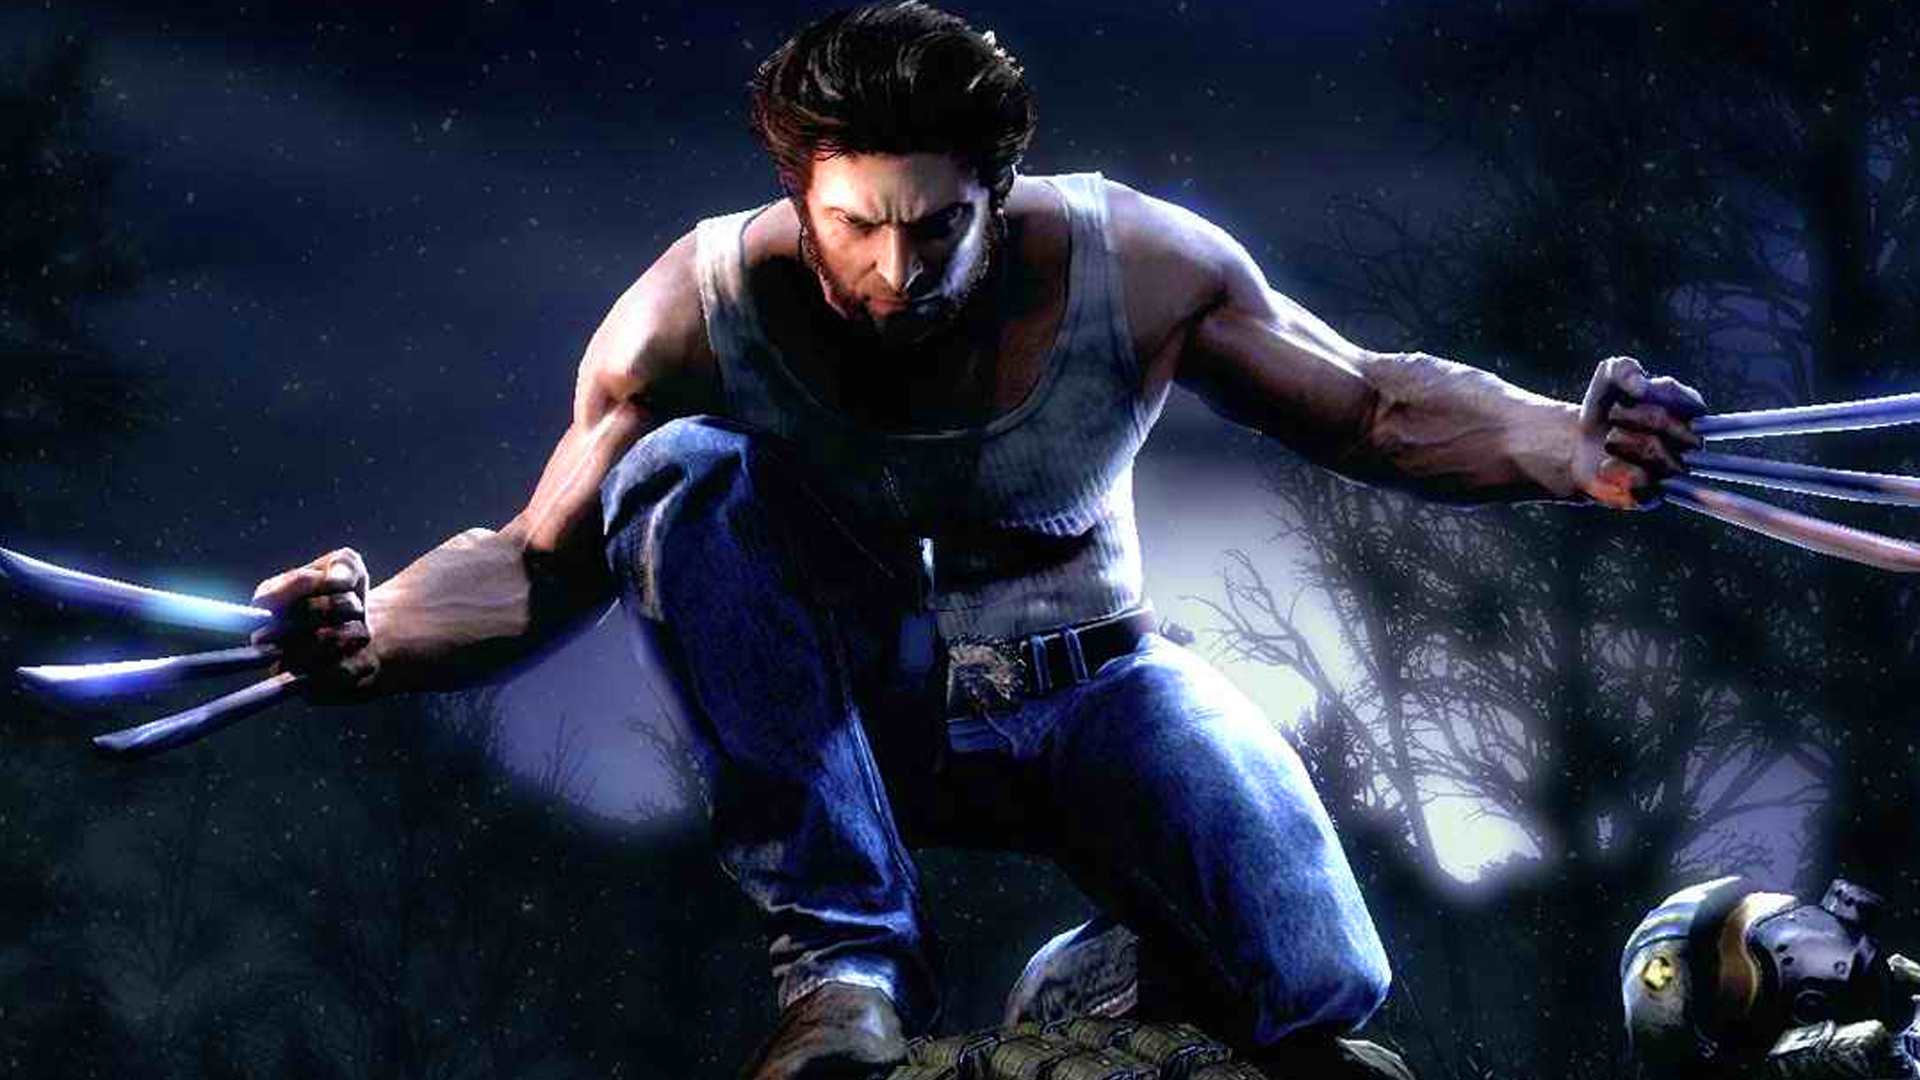 بازی Marvel’s Wolverine کی منتشر خواهد شد؟